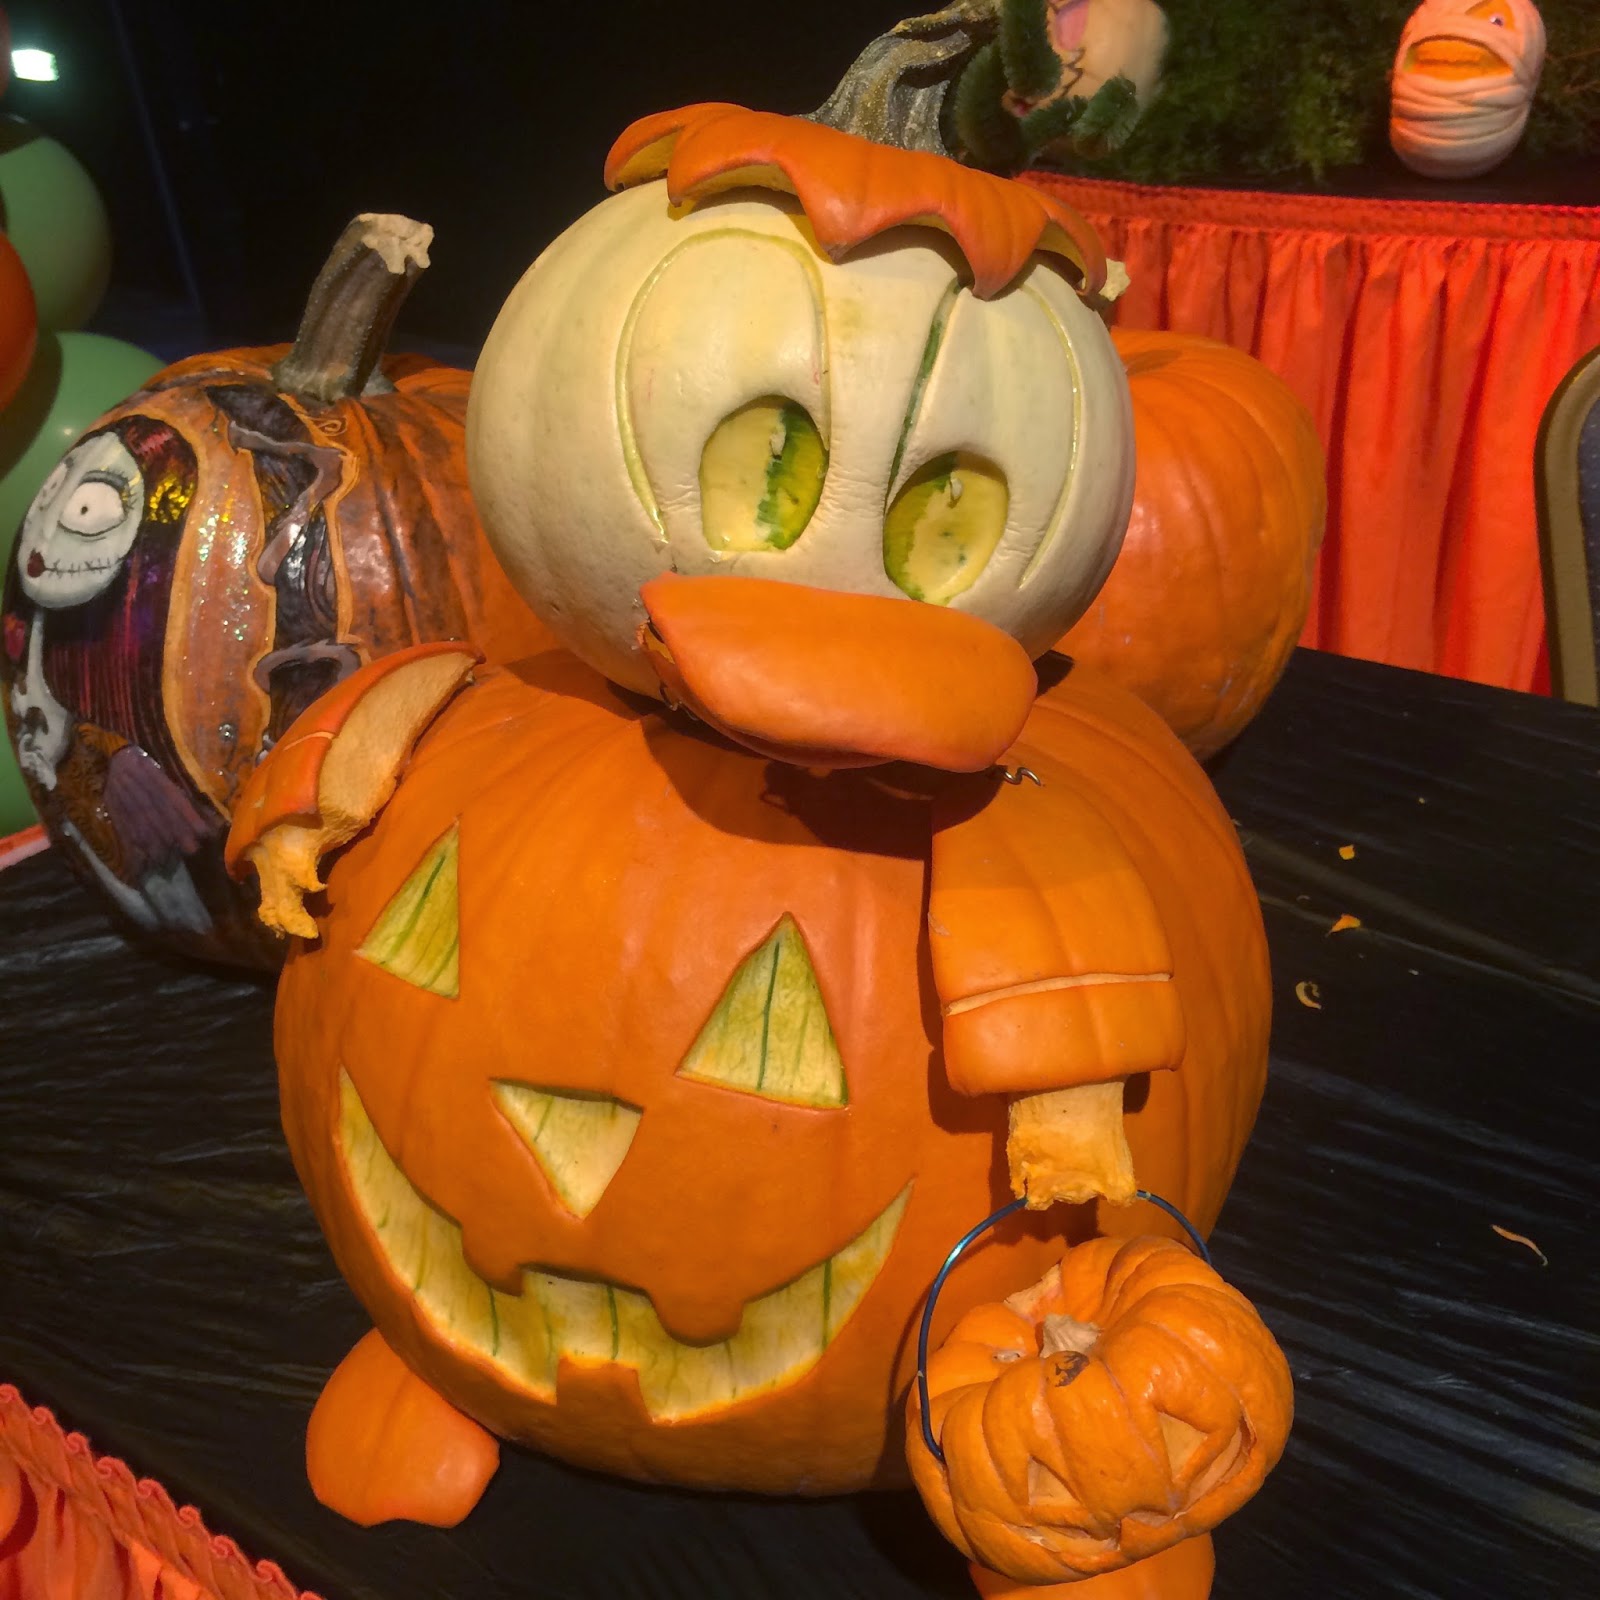 Disney Sisters: Disney Pumpkins: More #HalloweenTime Magic at the ...